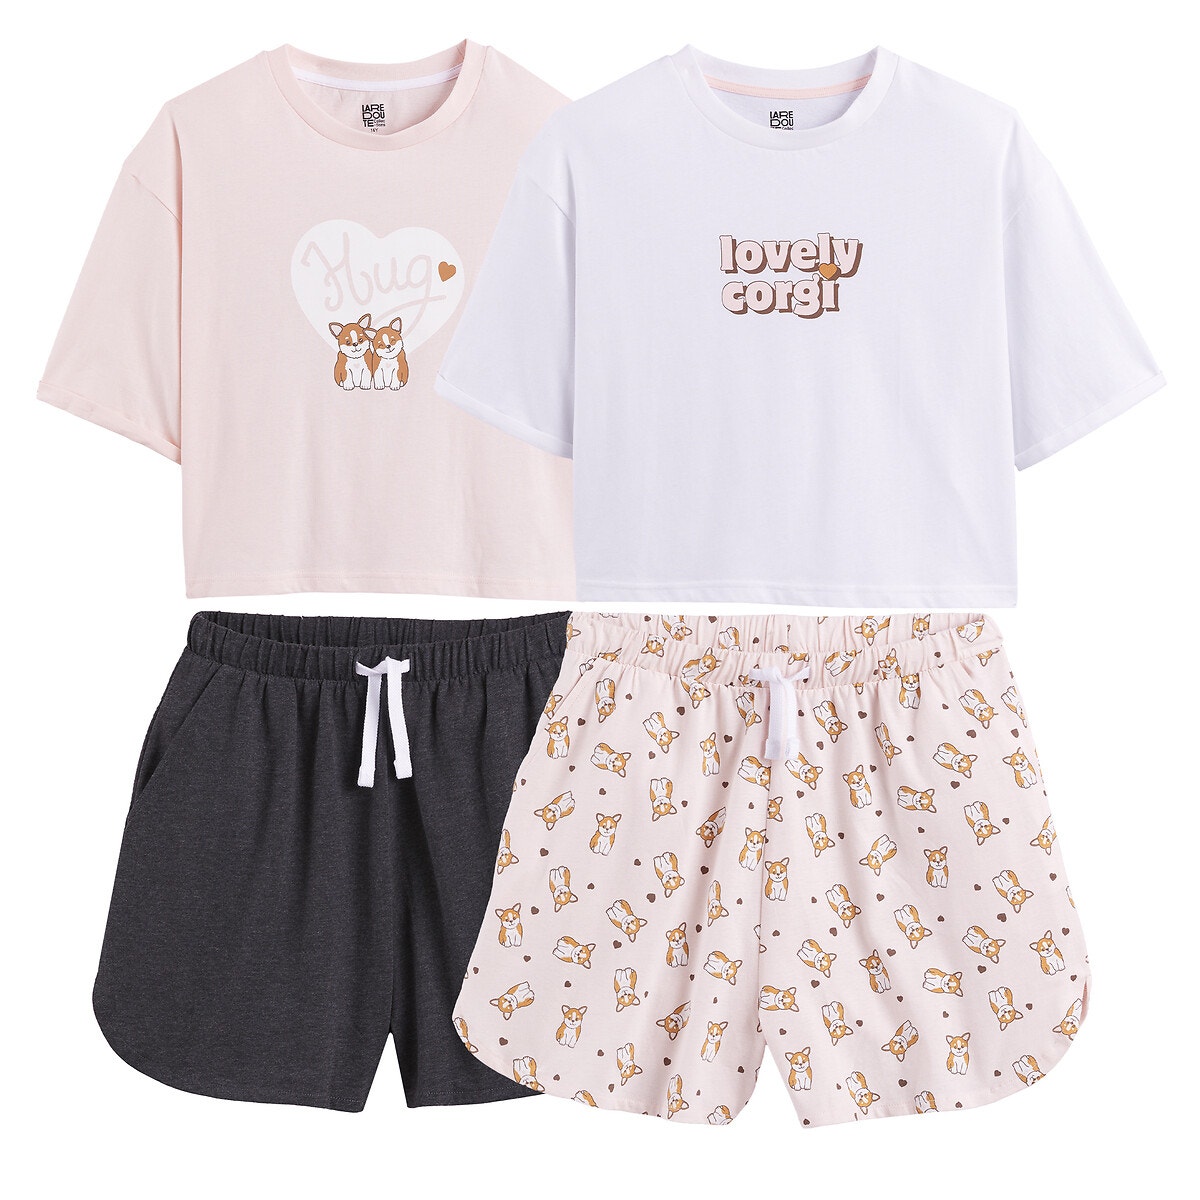 Μόδα > Παιδικά > Κορίτσι > Πιτζάμες, νυχτικά Σετ 2 πιτζάμες με σορτς και μοτίβο σκύλο κόργκι